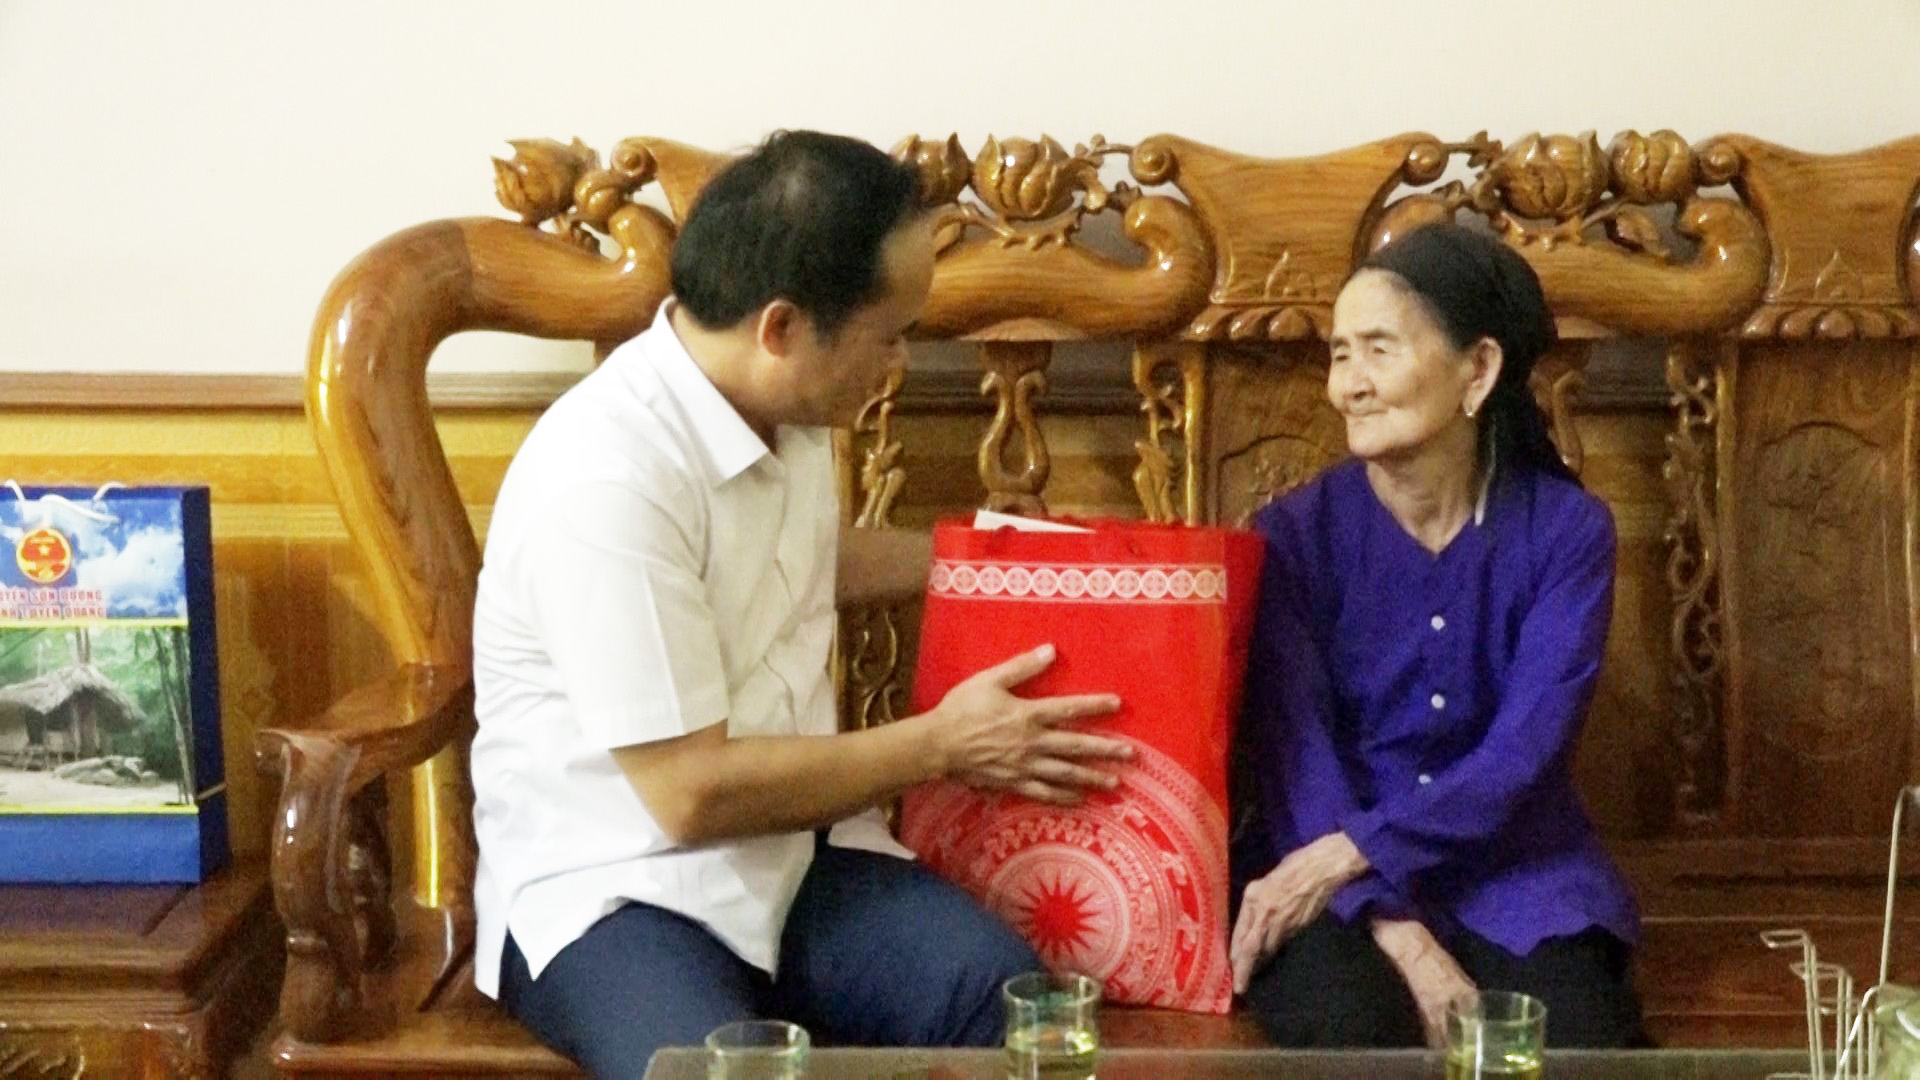 Phó Chủ tịch UBND tỉnh Hoàng Việt Phương thăm, tặng quà Mẹ Việt Nam anh hùng tại xã Hợp Thành